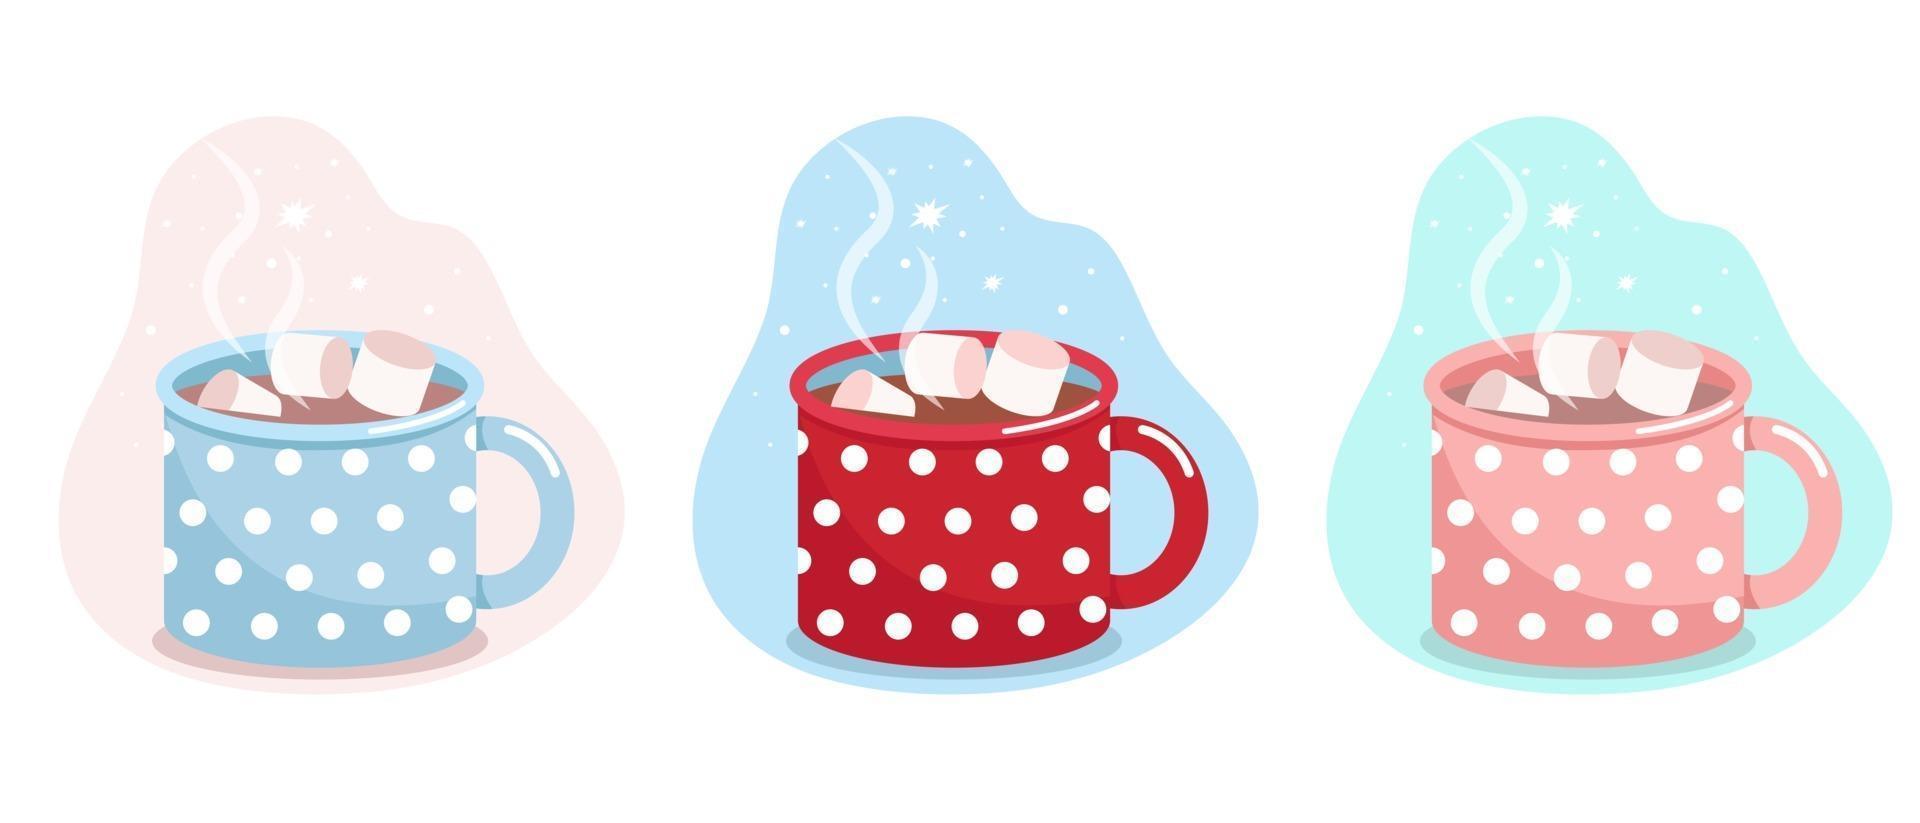 tasse avec du cacao et des guimauves, tasse bleue, rouge et rose à pois blancs, illustration vectorielle à plat, isolée, dessin animé vecteur